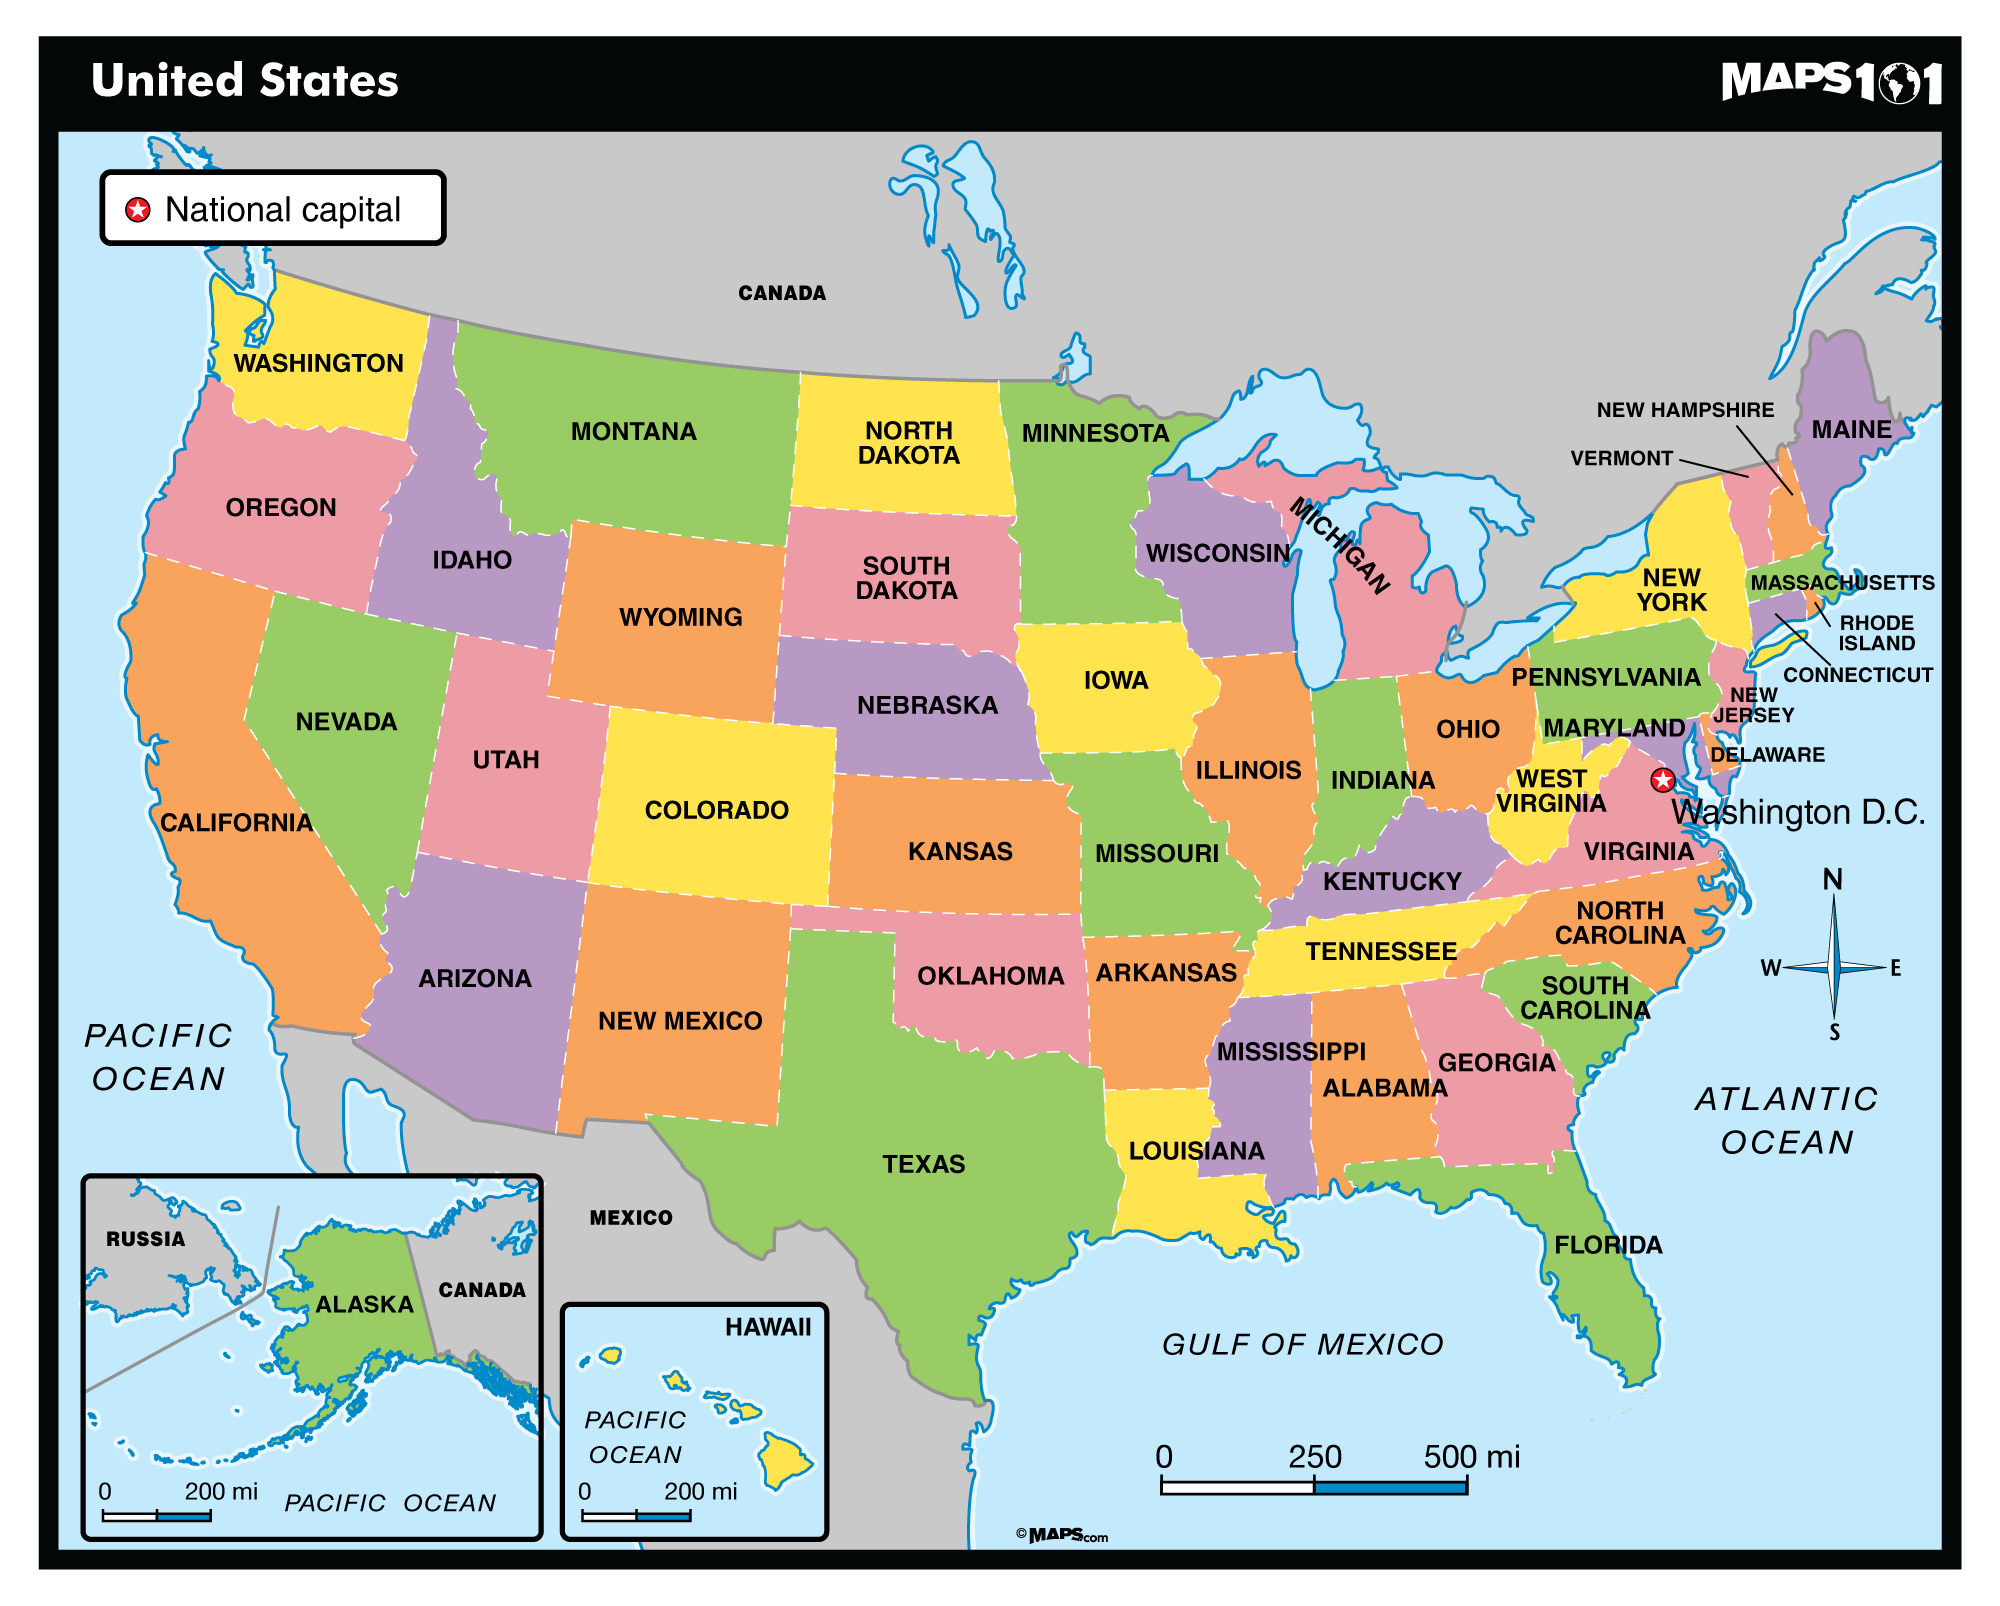 Primary Level: United States Political Map | Maps.com.com